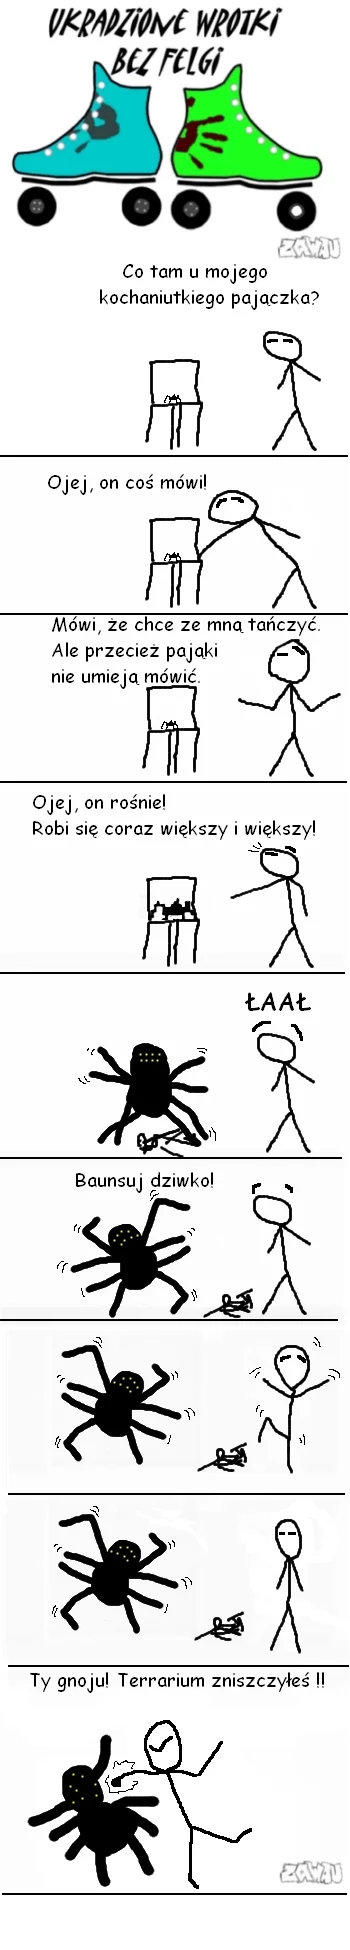 Stooleyqa - Pamiętacie te czasy, gdy każdy polski internetowy komiks chciał być jak k...